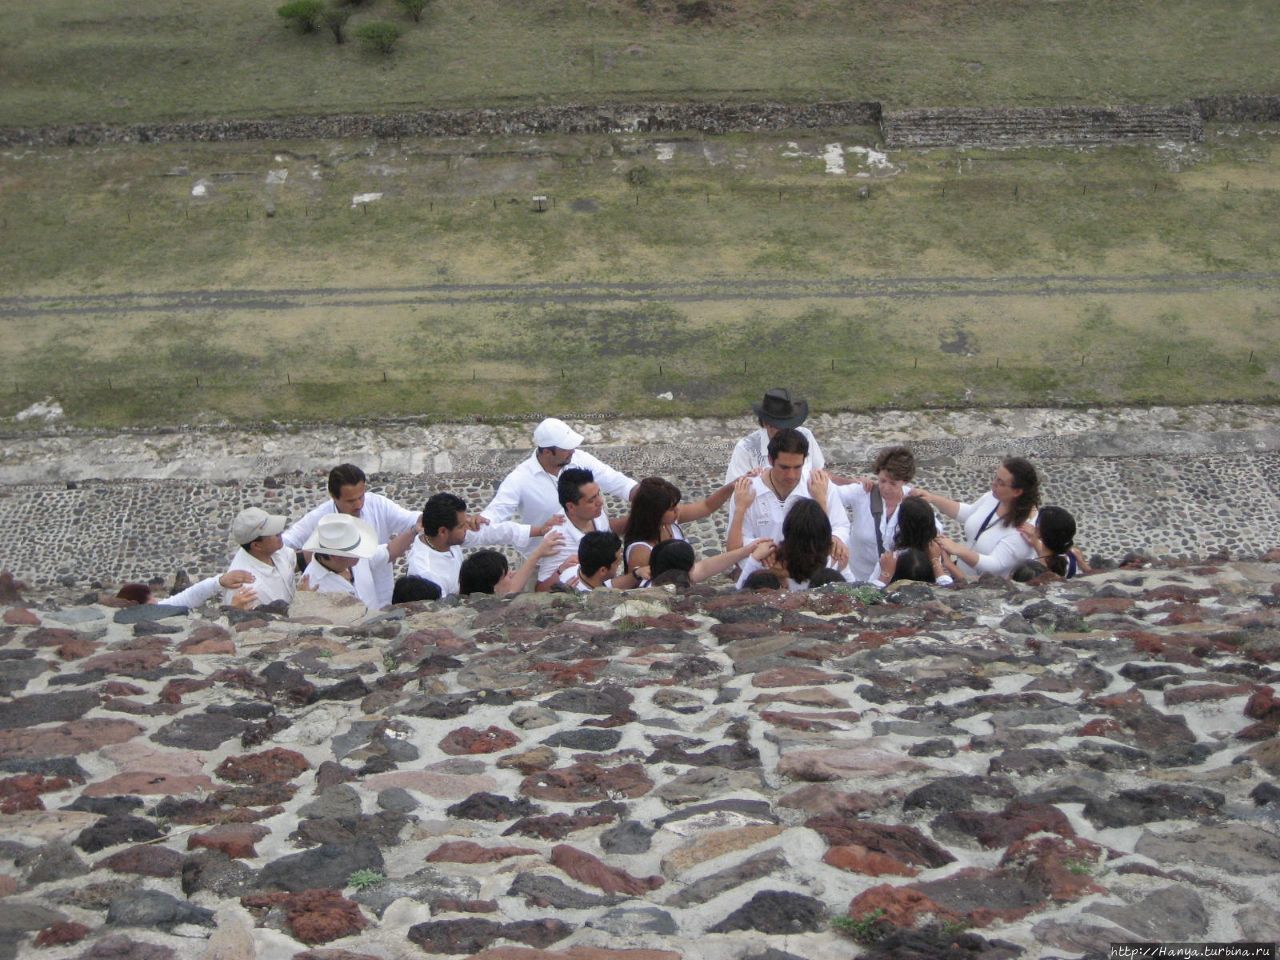 Пирамида Солнца. Медитация Теотиуакан пре-испанский город тольтеков, Мексика